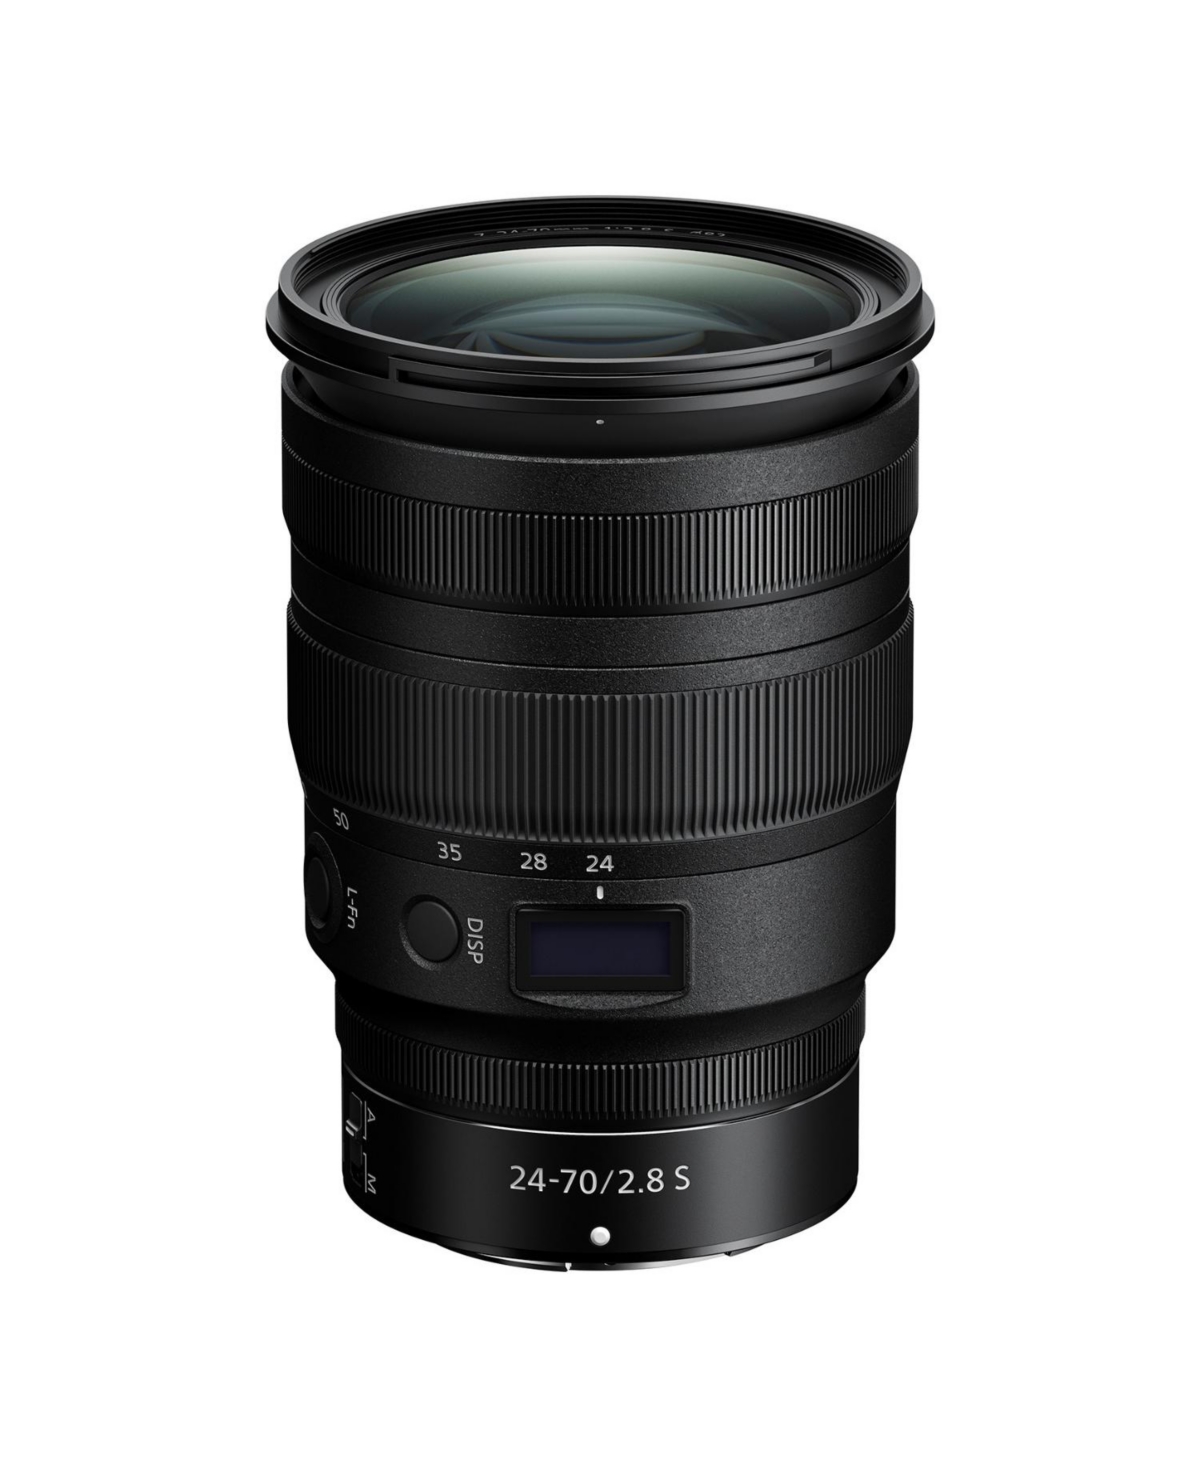 Nikon Nikkor Z 24-70mm f/2.8 S Lens for Z Series Mirrorless Cameras - Black